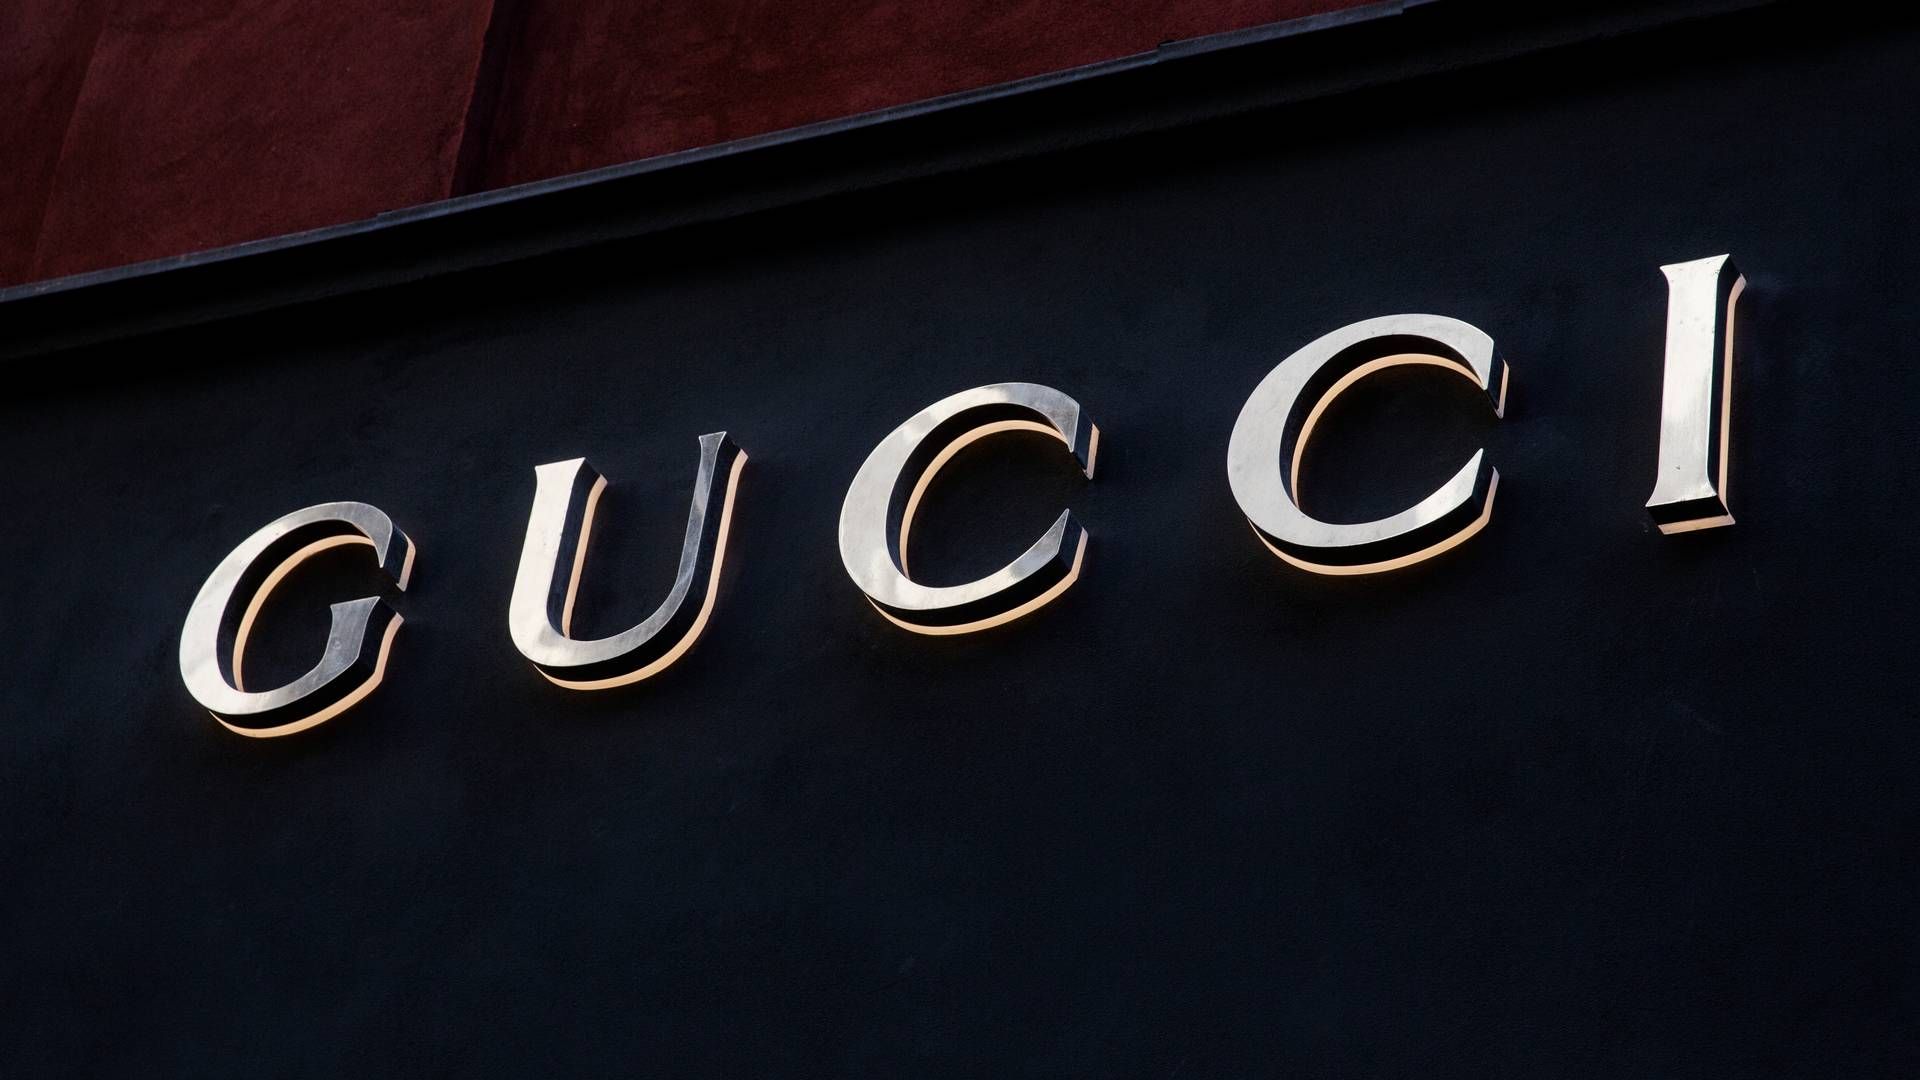 Flere online-platforme med salg af lukusmærker som Gucci har meldt om dalende salg. | Foto: Emma Sejersen